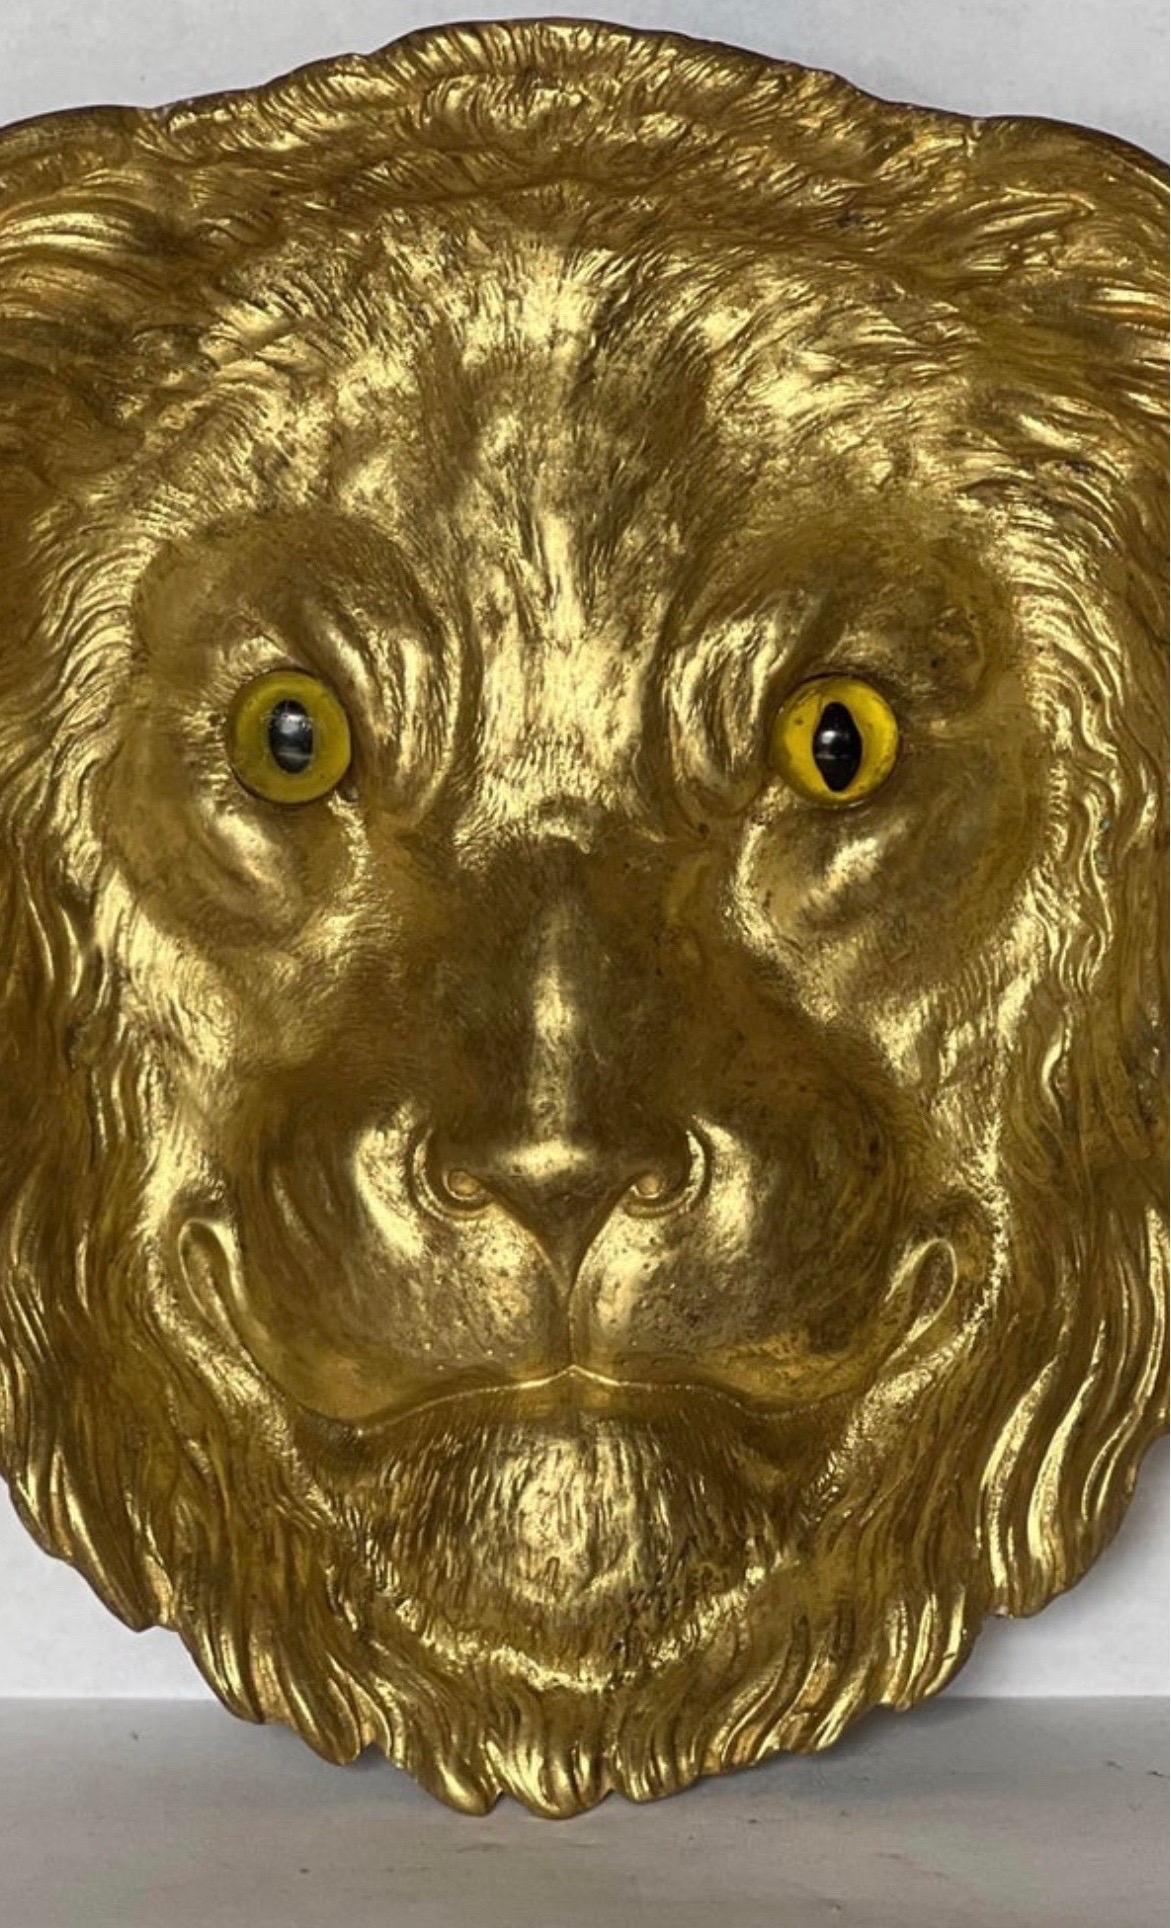 Ein sehr schöner und seltener französischer Aschenbecher in Form eines Löwenkopfes mit Glasaugen. Sehr einzigartiges Stück mit einigen Abnutzungserscheinungen und geringfügigen Verlusten auf der Rückseite, die beim Ausruhen nicht bemerkt wurden.